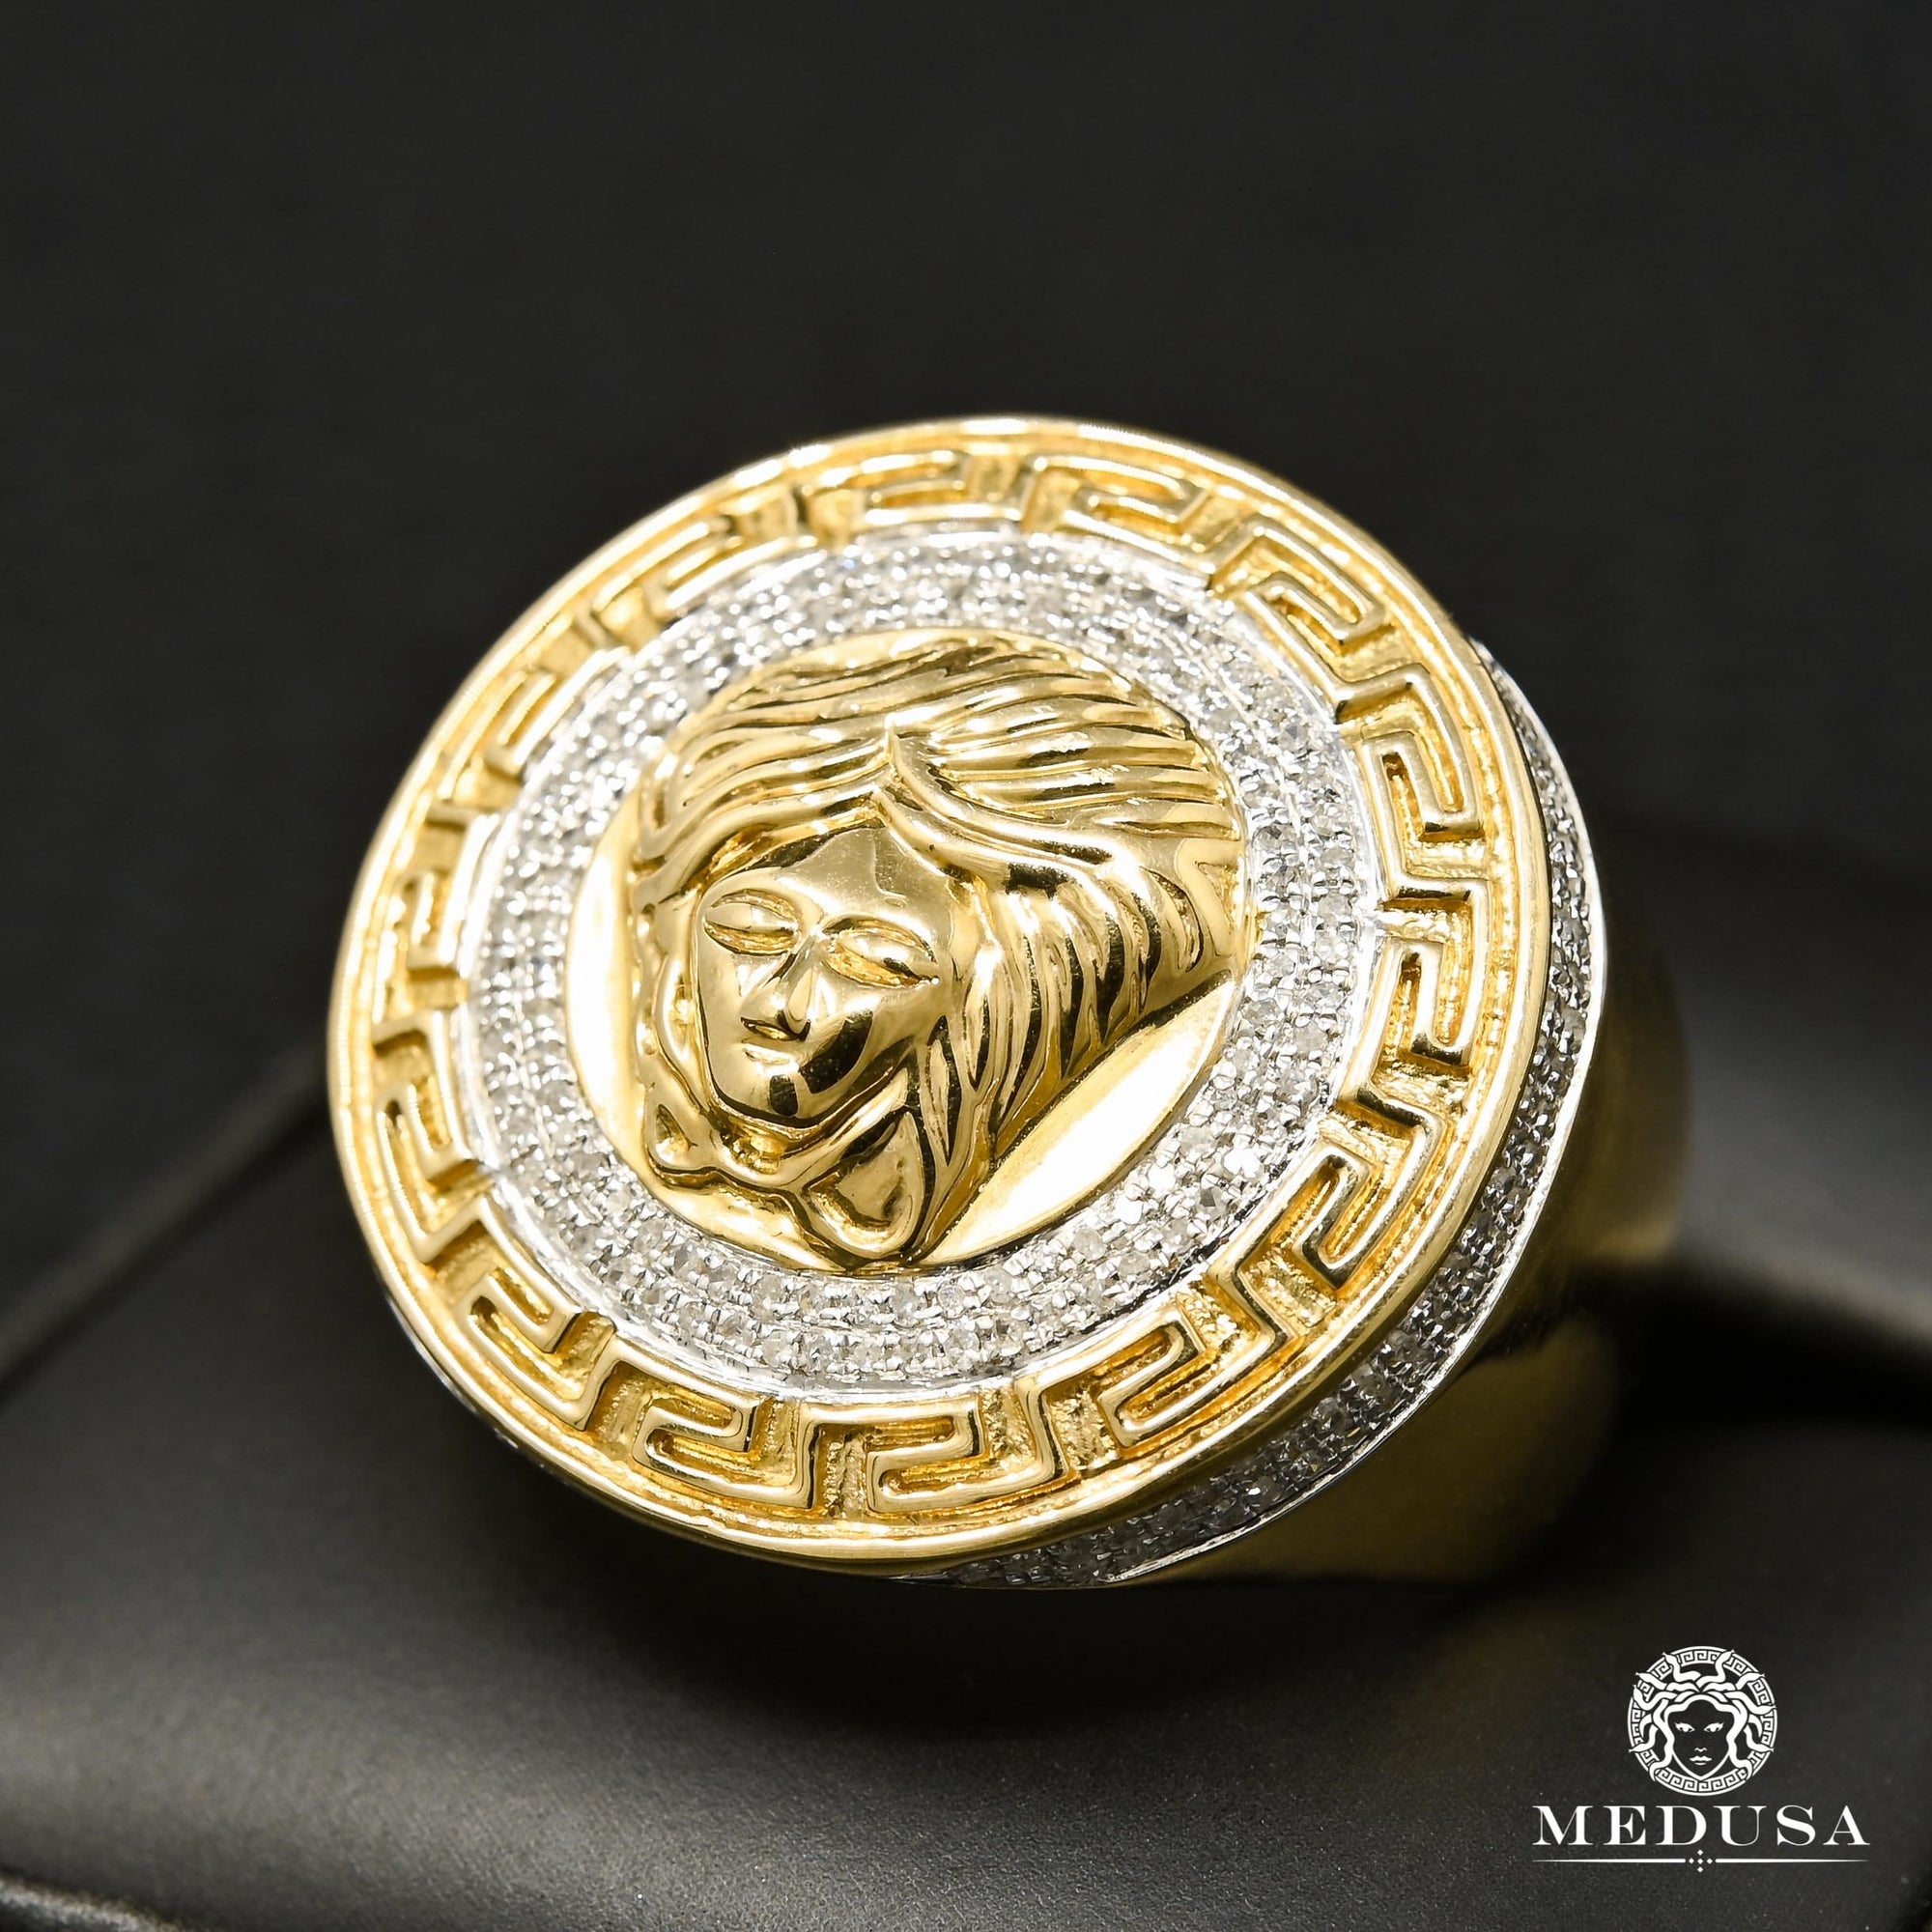 10K Gold Diamond Ring | Medusa D1 Men's Ring - 80PT Diamond / Yellow Gold